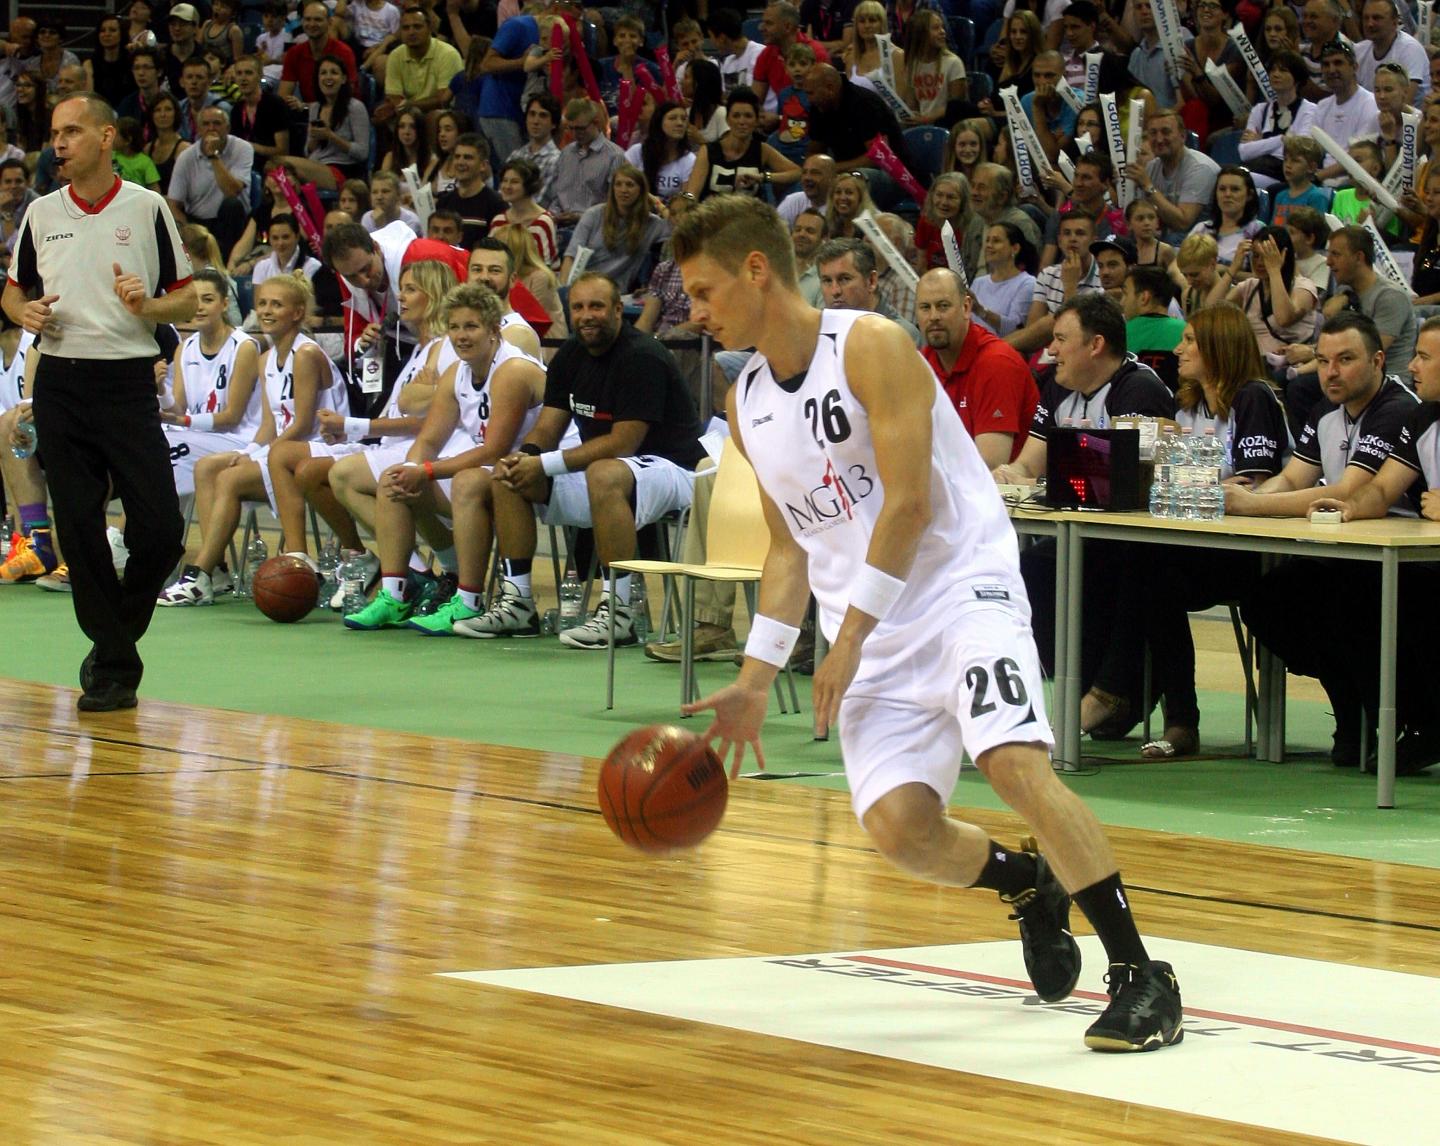 W charytatywnym meczu drużyny Marcina Gortata z reprezentacją Wojska Polskiego Łukasz Piszczek zagrał ze swoim ulubionym numerem 26 na koszulce. Jako koszykarz spisał się wyśmienicie.